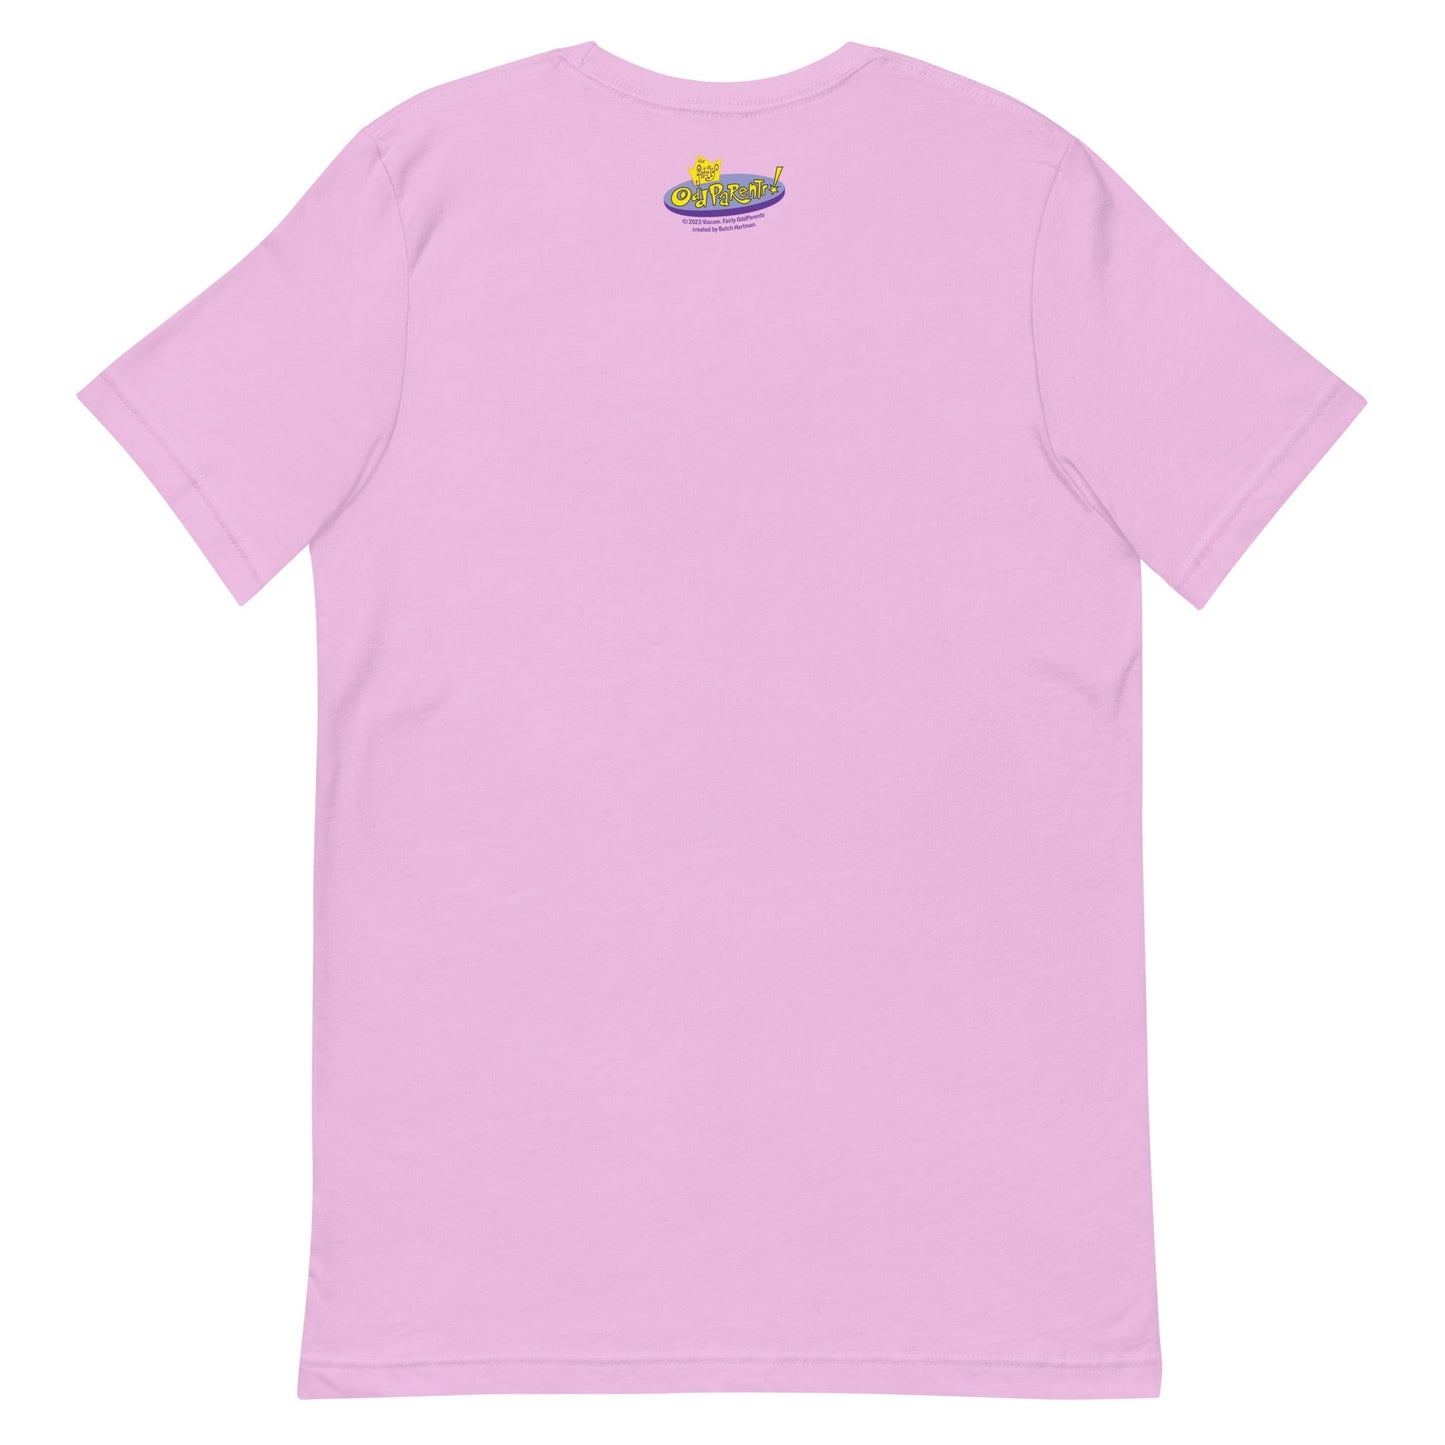 The Fairly OddParents Wanda Unisex Adult Short Sleeve T - Shirt - Paramount Shop